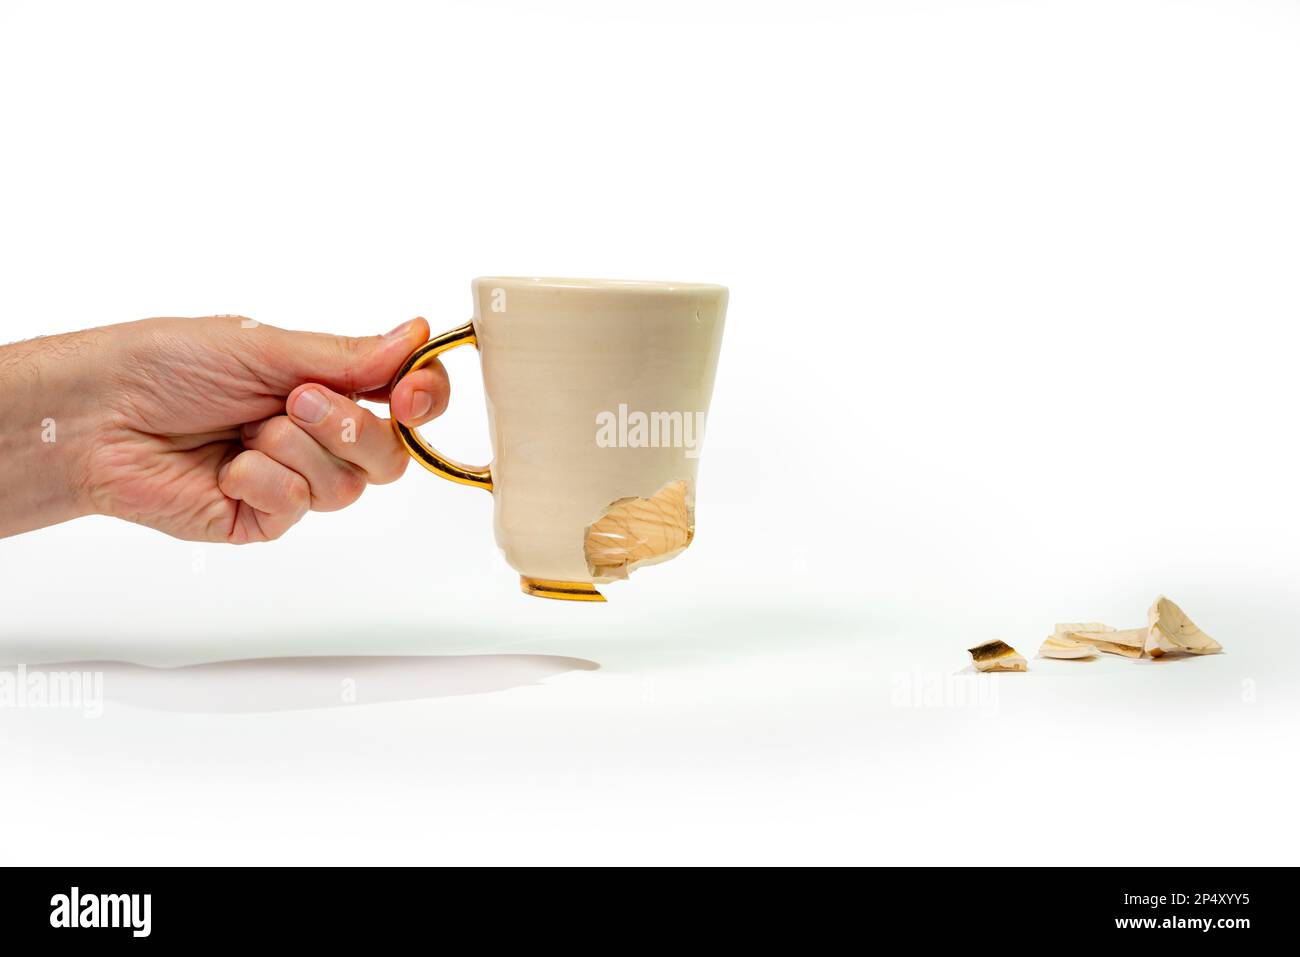 Uomo che tiene rotto tè tazza isolato su sfondo bianco. Primo piano del braccio che tiene la tazza di caffè incrinata Foto Stock